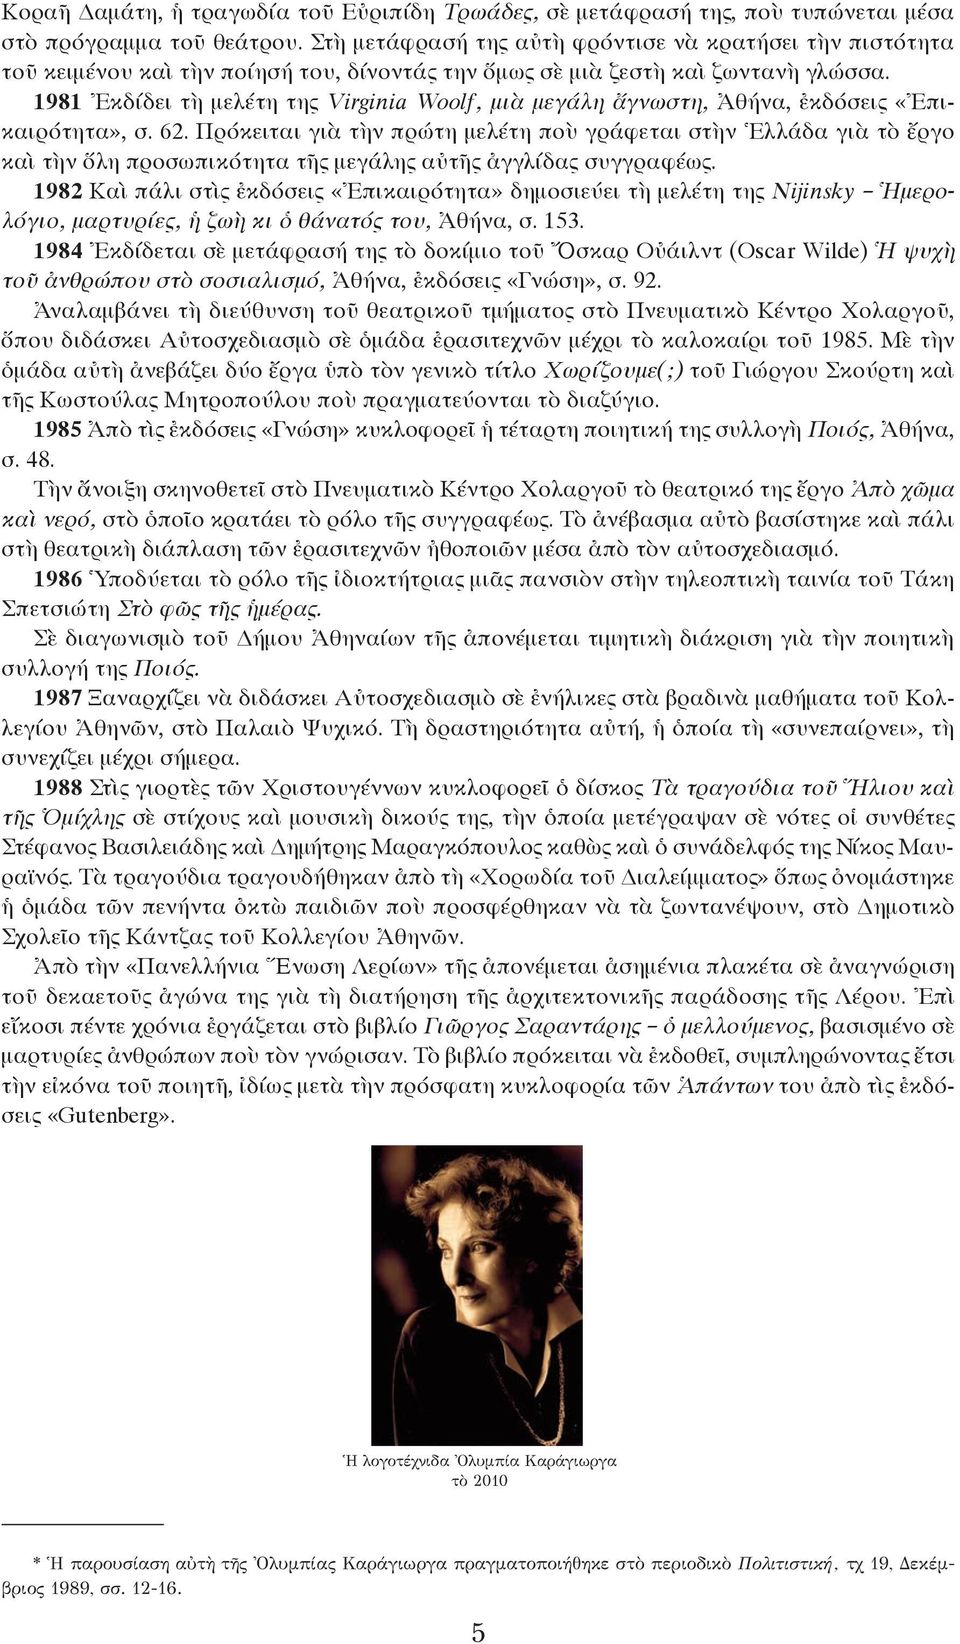 1981 Ἐκδίδει τὴ μελέτη της Virginia Woolf, μιὰ μεγάλη ἄγνωστη, Ἀθήνα, ἐκδόσεις «Ἐπικαιρότητα», σ. 62.